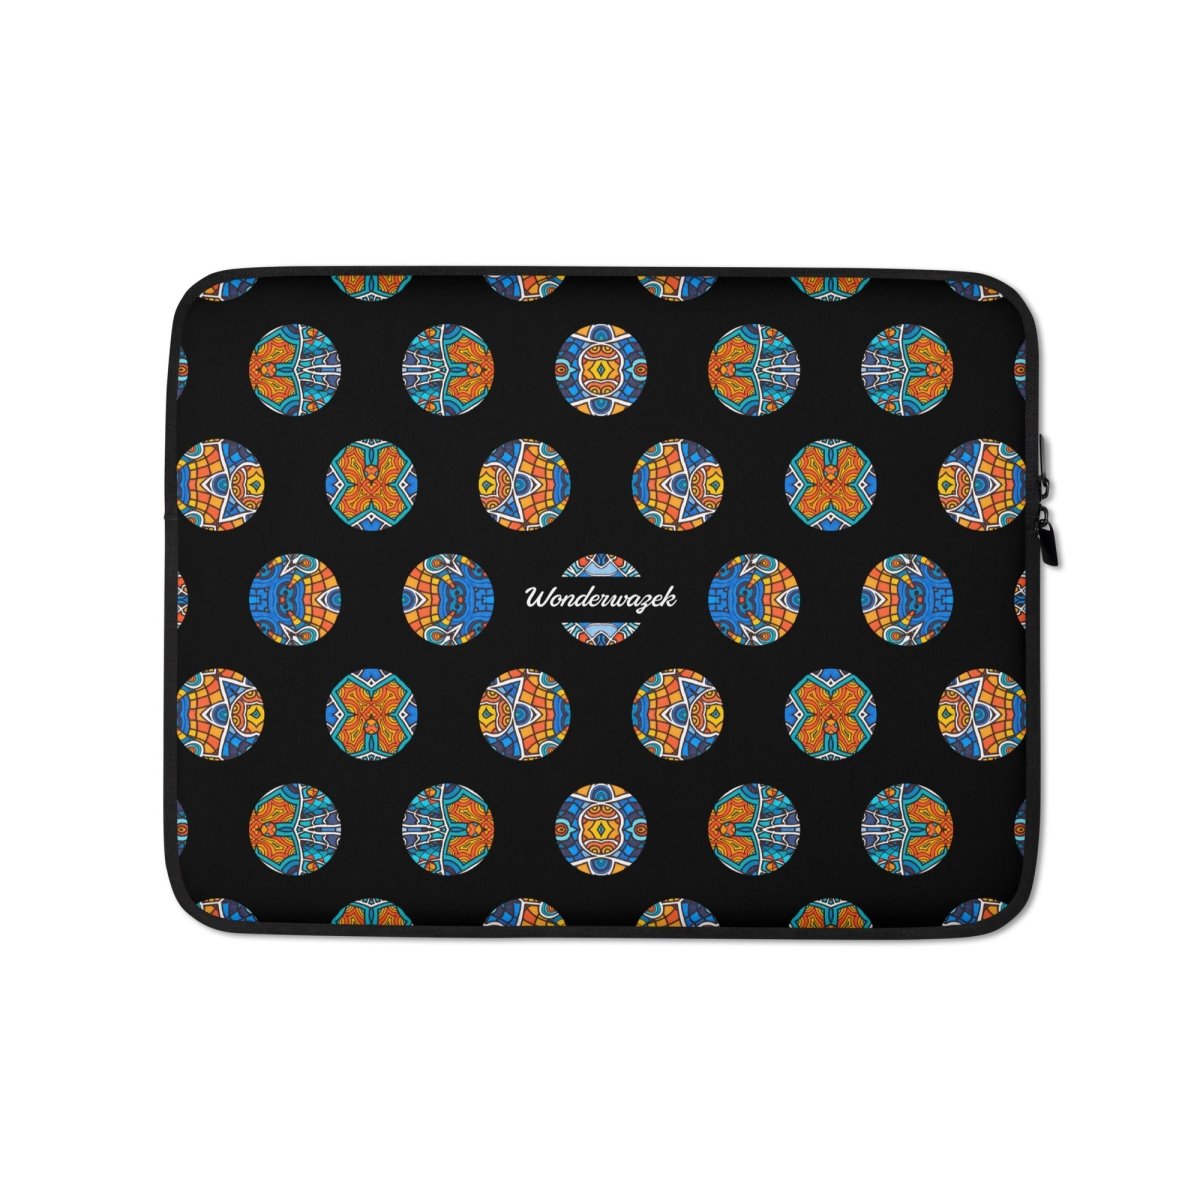 Laptoptasche • Blankas Blumen – Punkte, blau, orange, schwarz - Wonderwazek